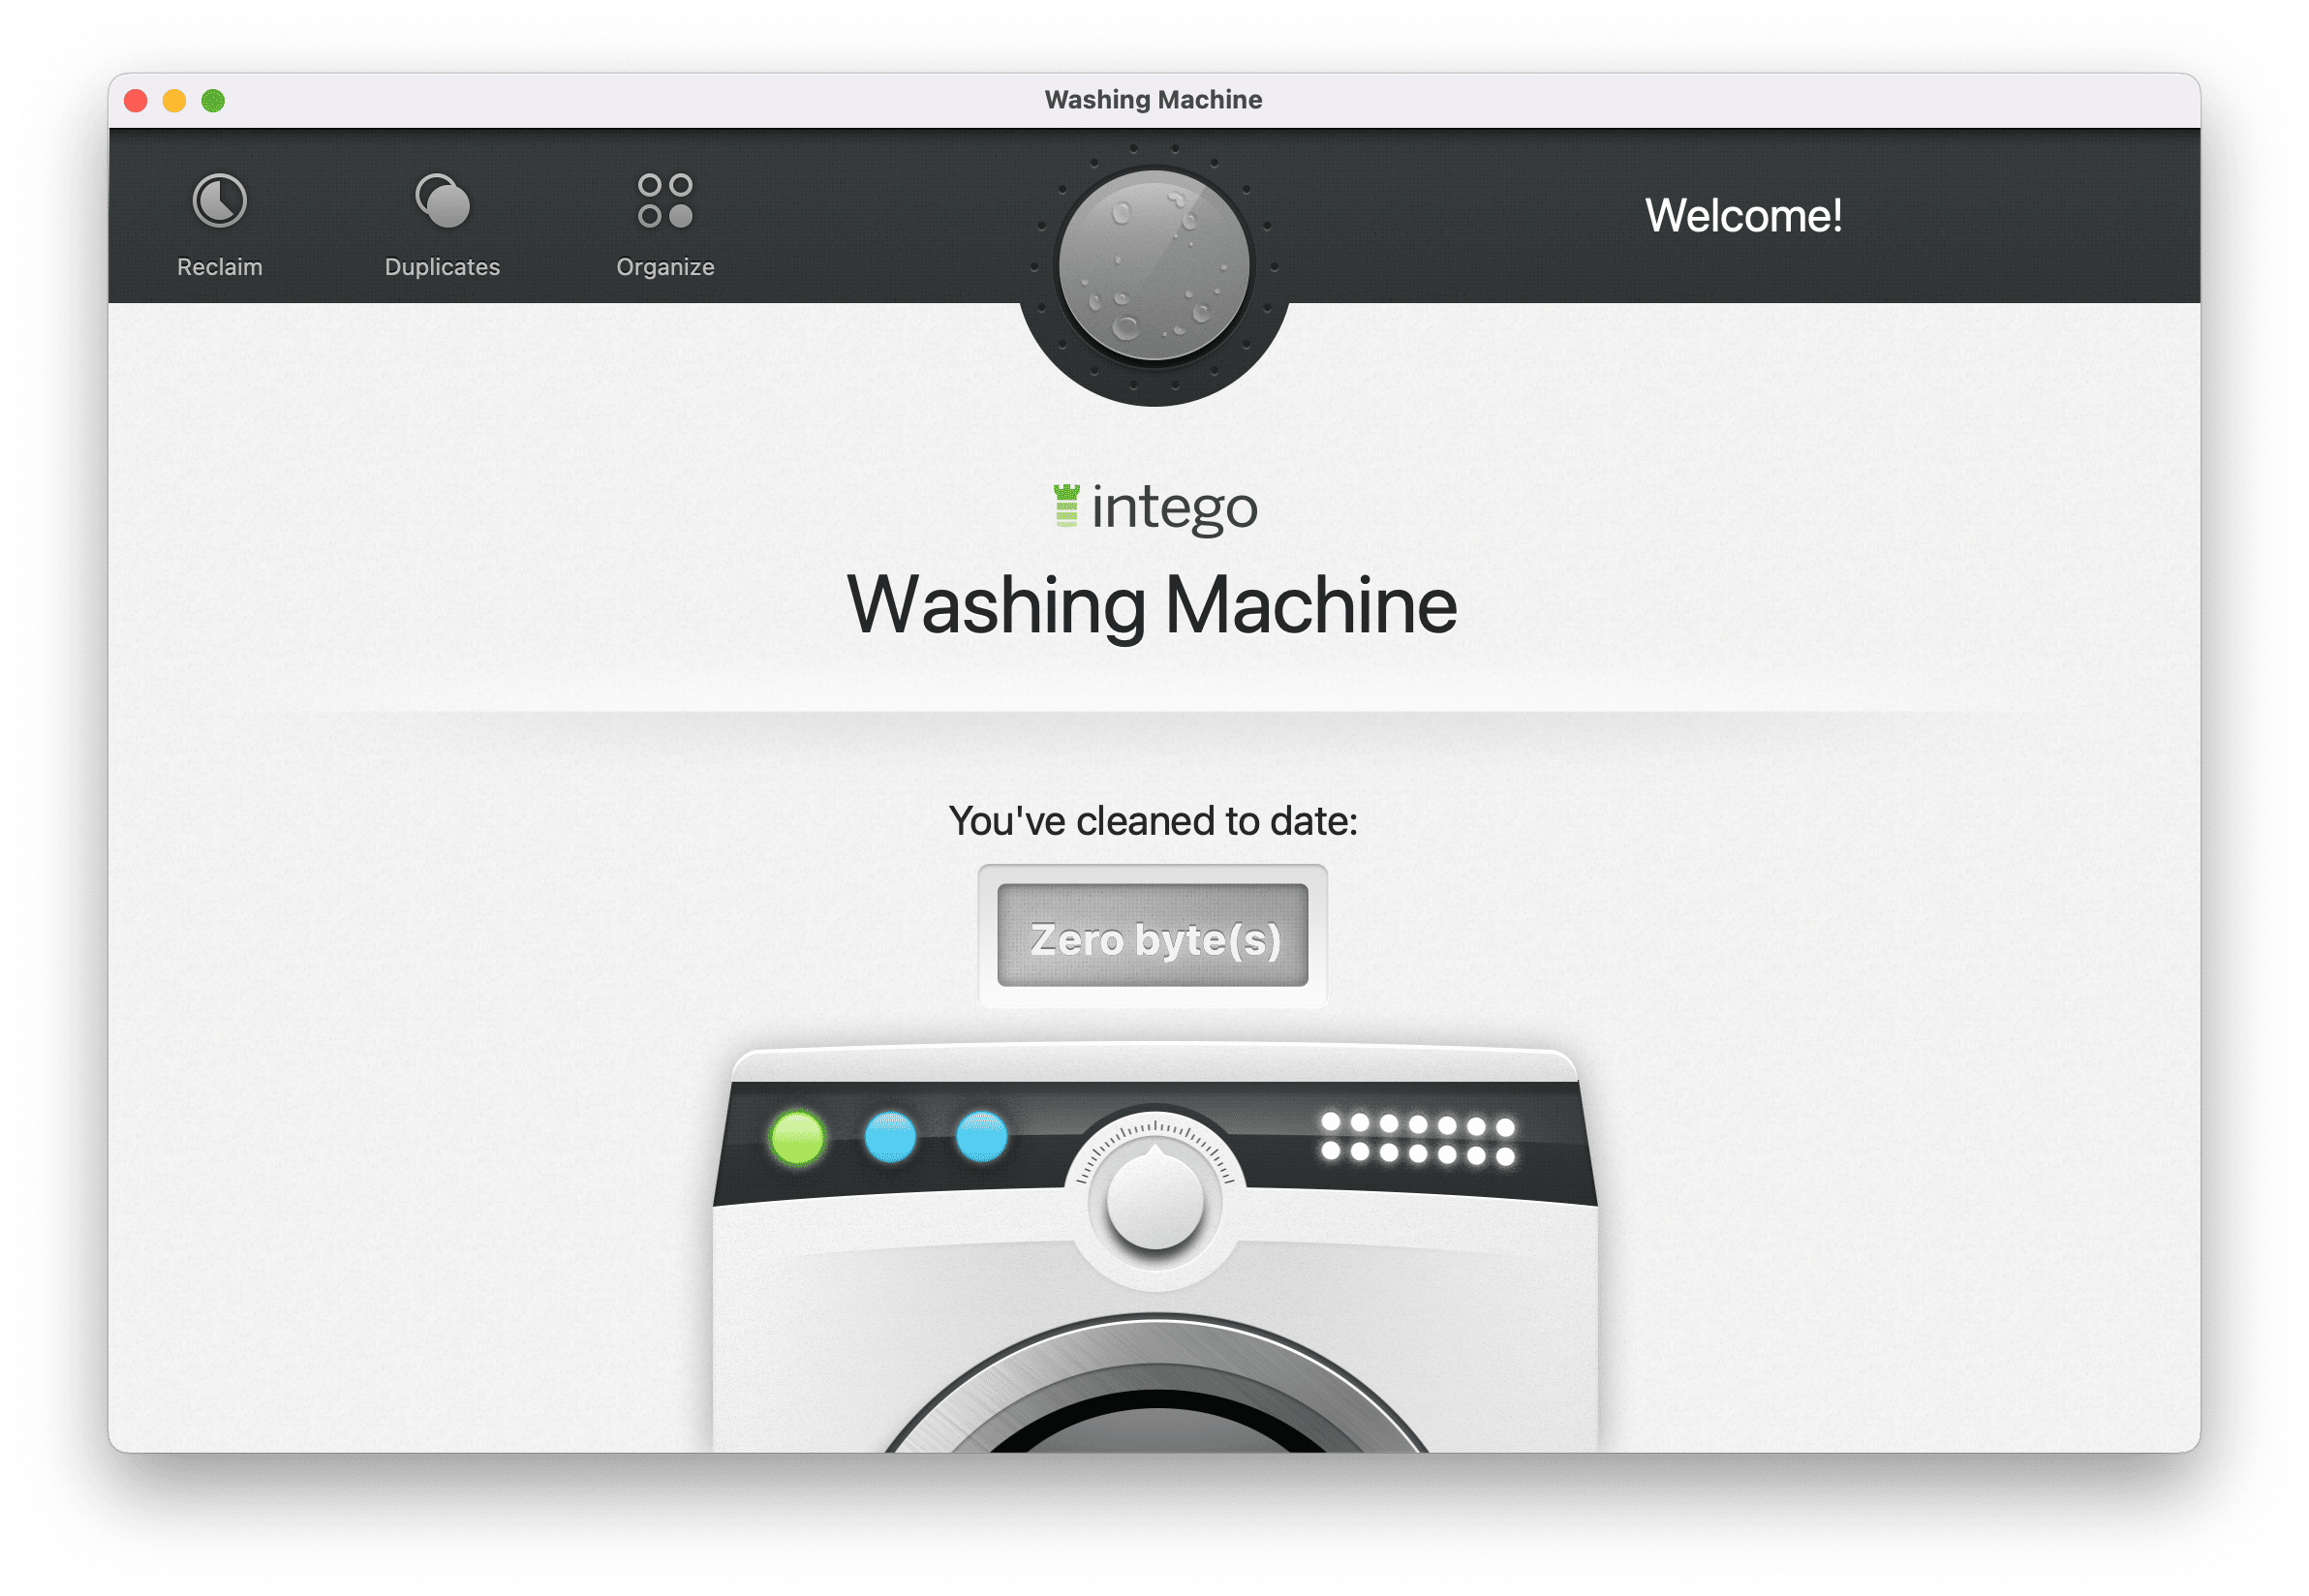 Tela de boas vindas do Washing Machine